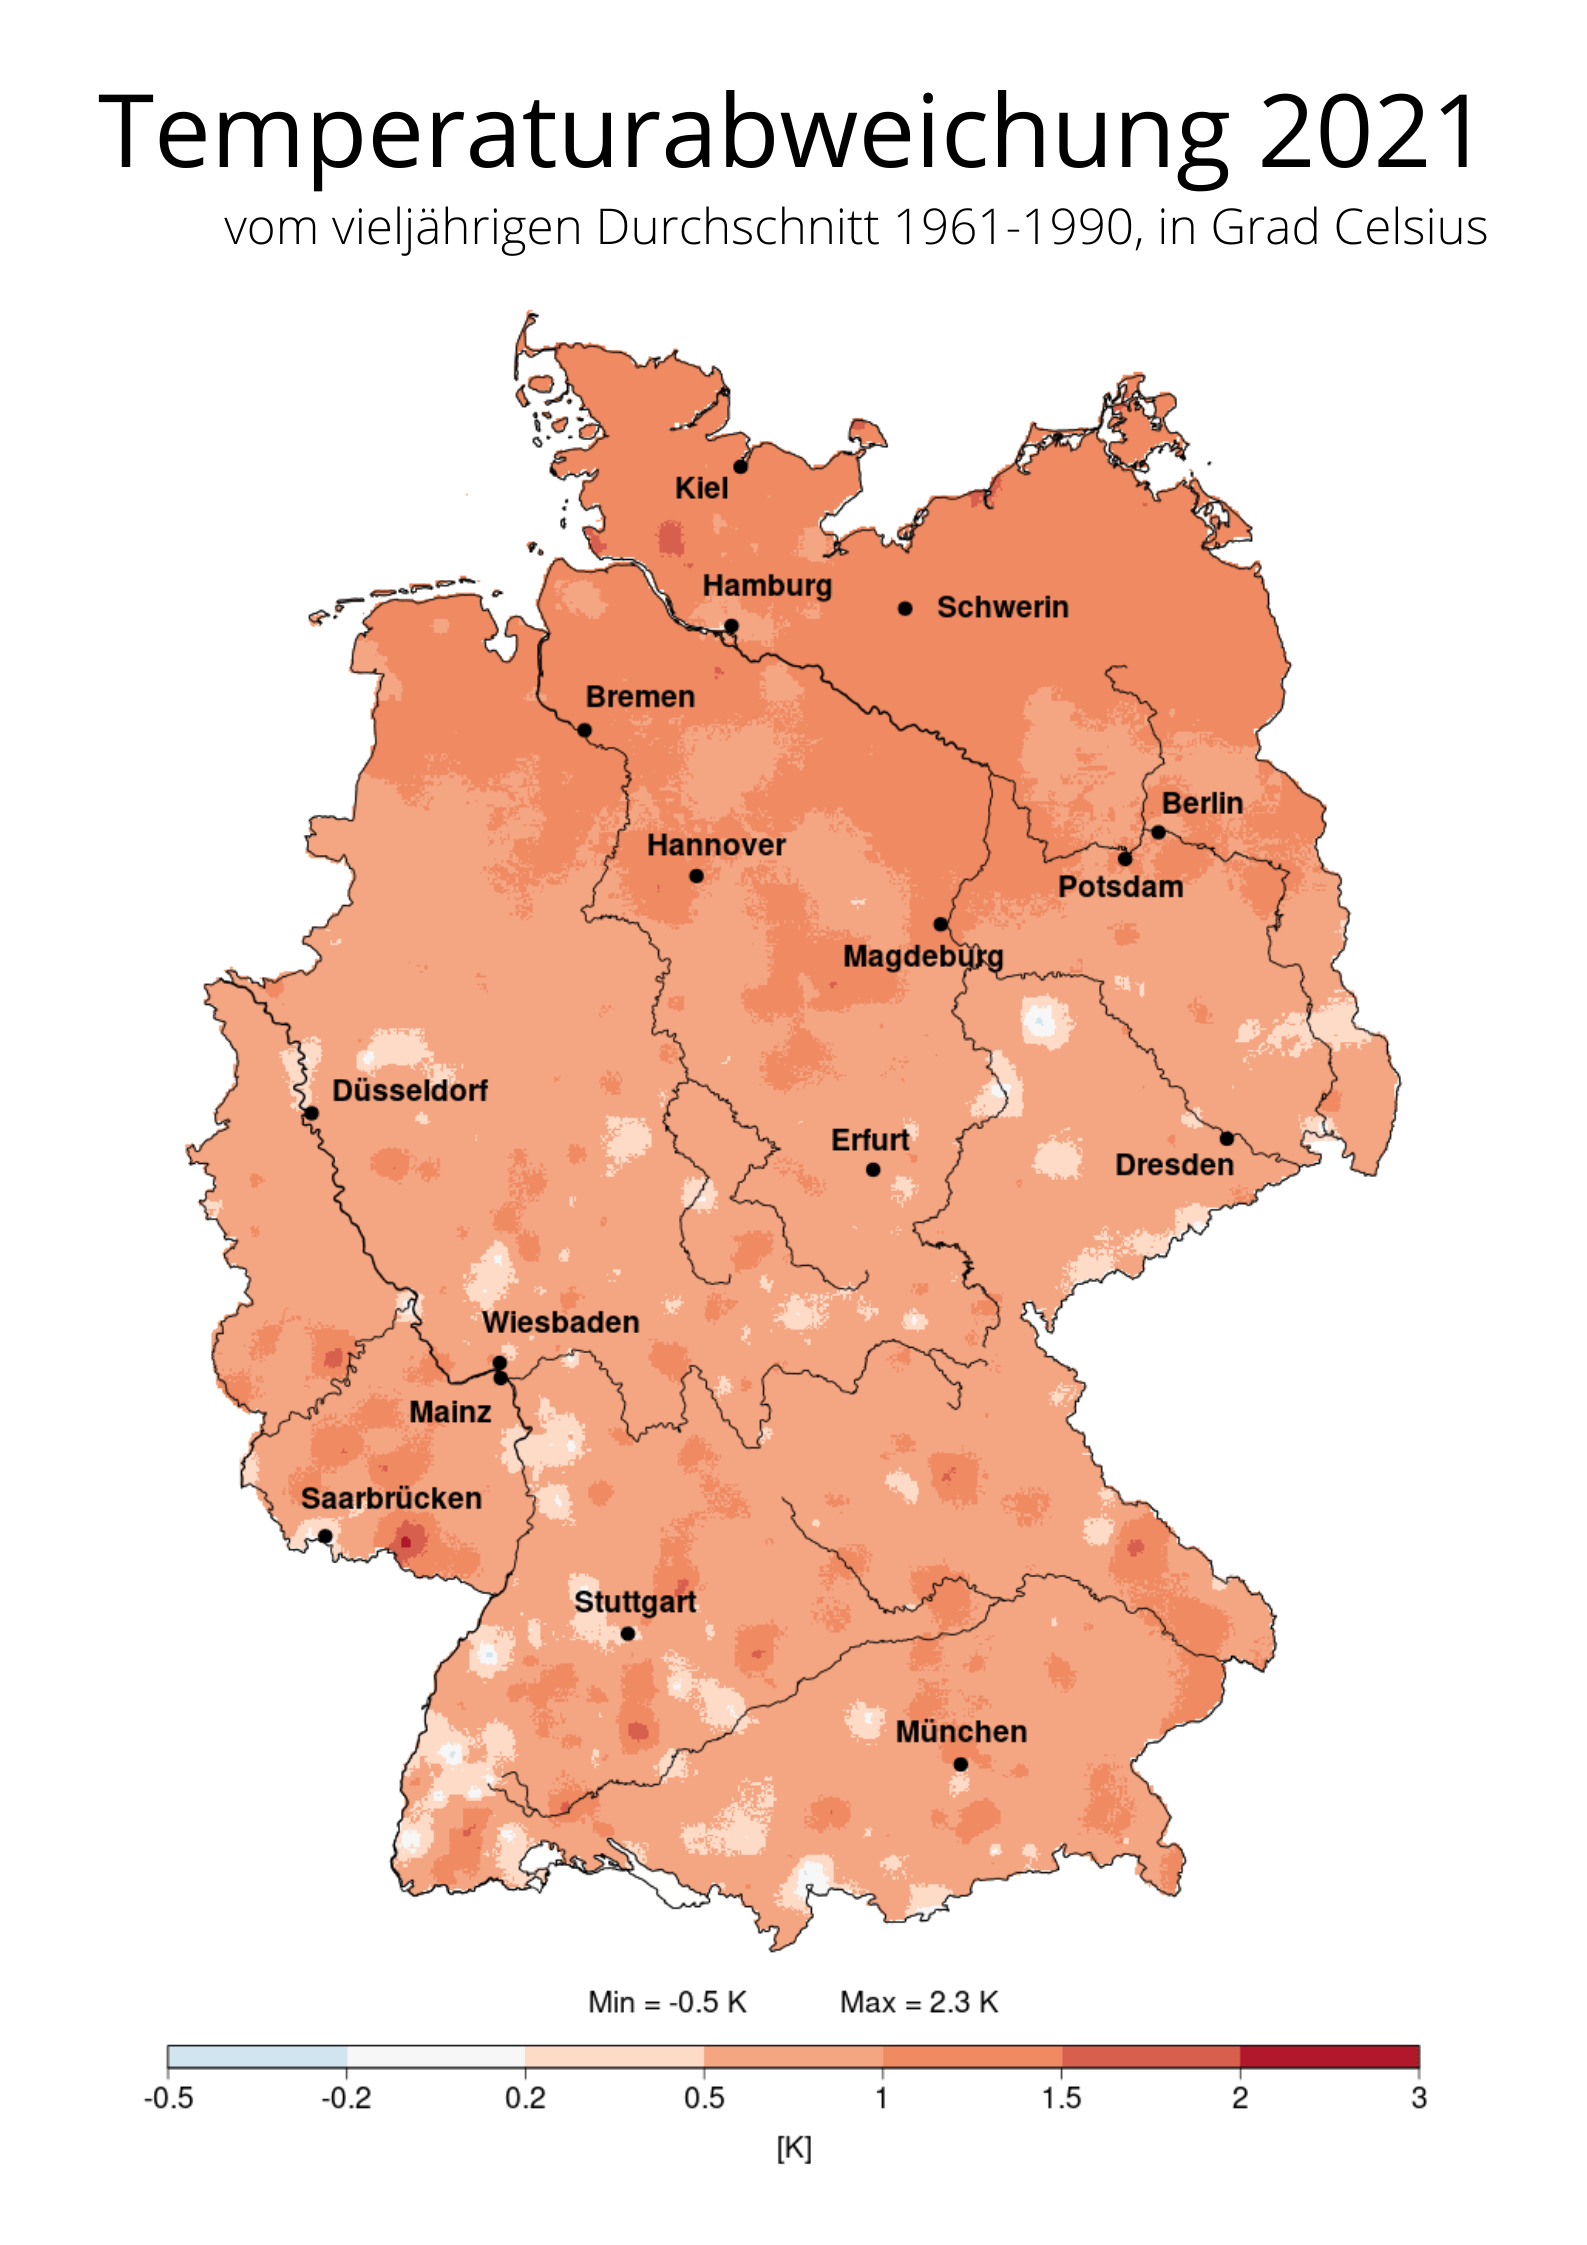 Die Lufttemperatur lag in Deutschland 2021 durchschnittlich bei 9,2 Grad Celsius - knapp 1 Grad höher als im Vergleichszeitraum von 1961-1990.